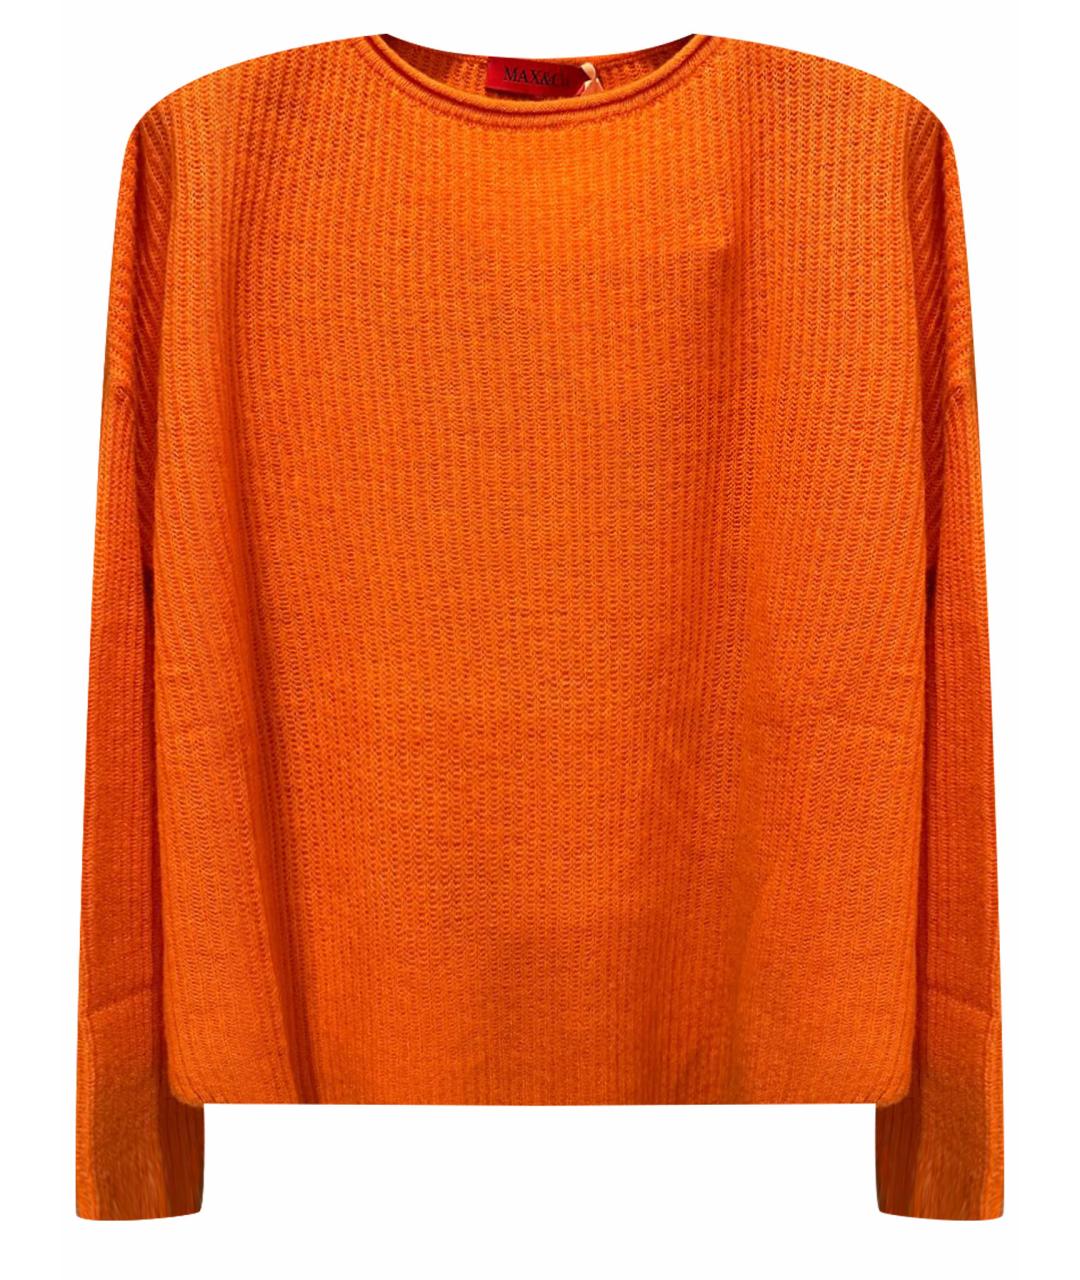 MAX&CO Оранжевый кашемировый джемпер / свитер, фото 1